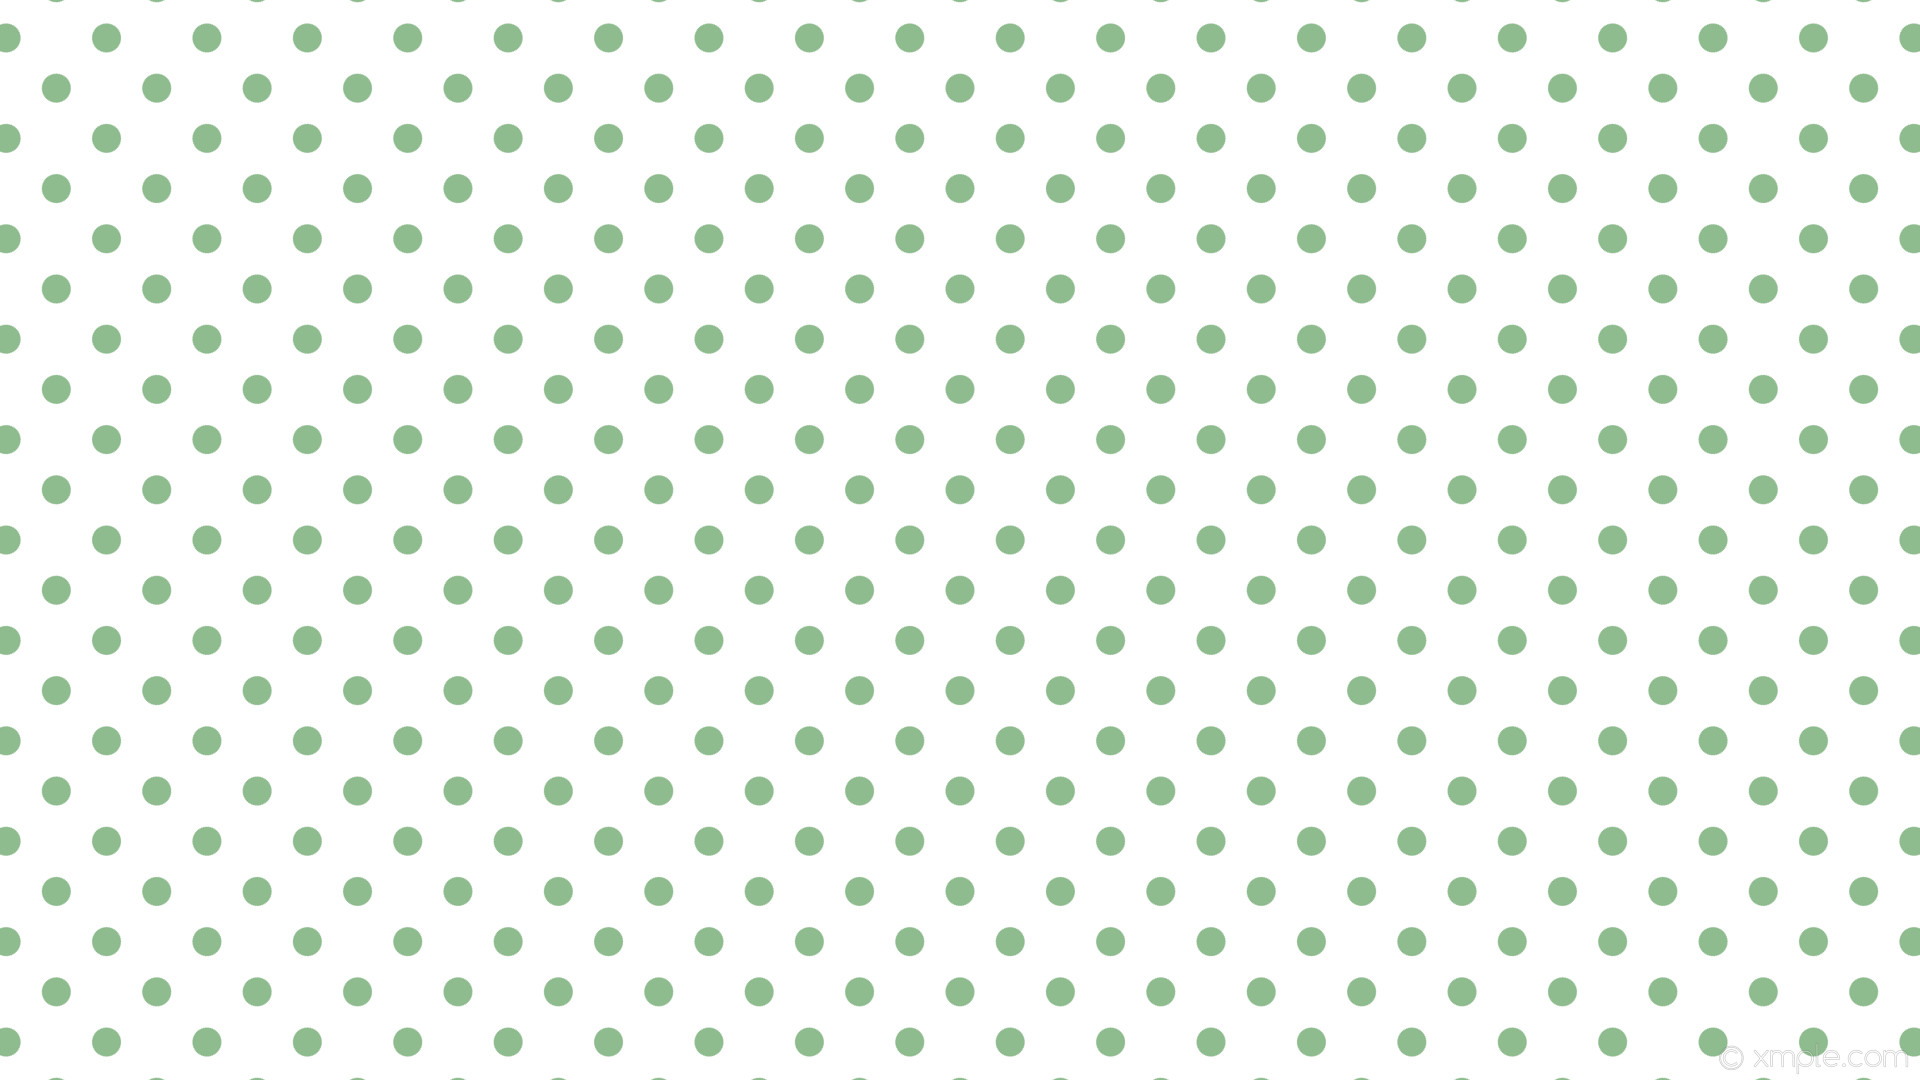 1920x1080 wallpaper white polka dots spots green dark sea green #ffffff #8fbc8f 225Â°  29px